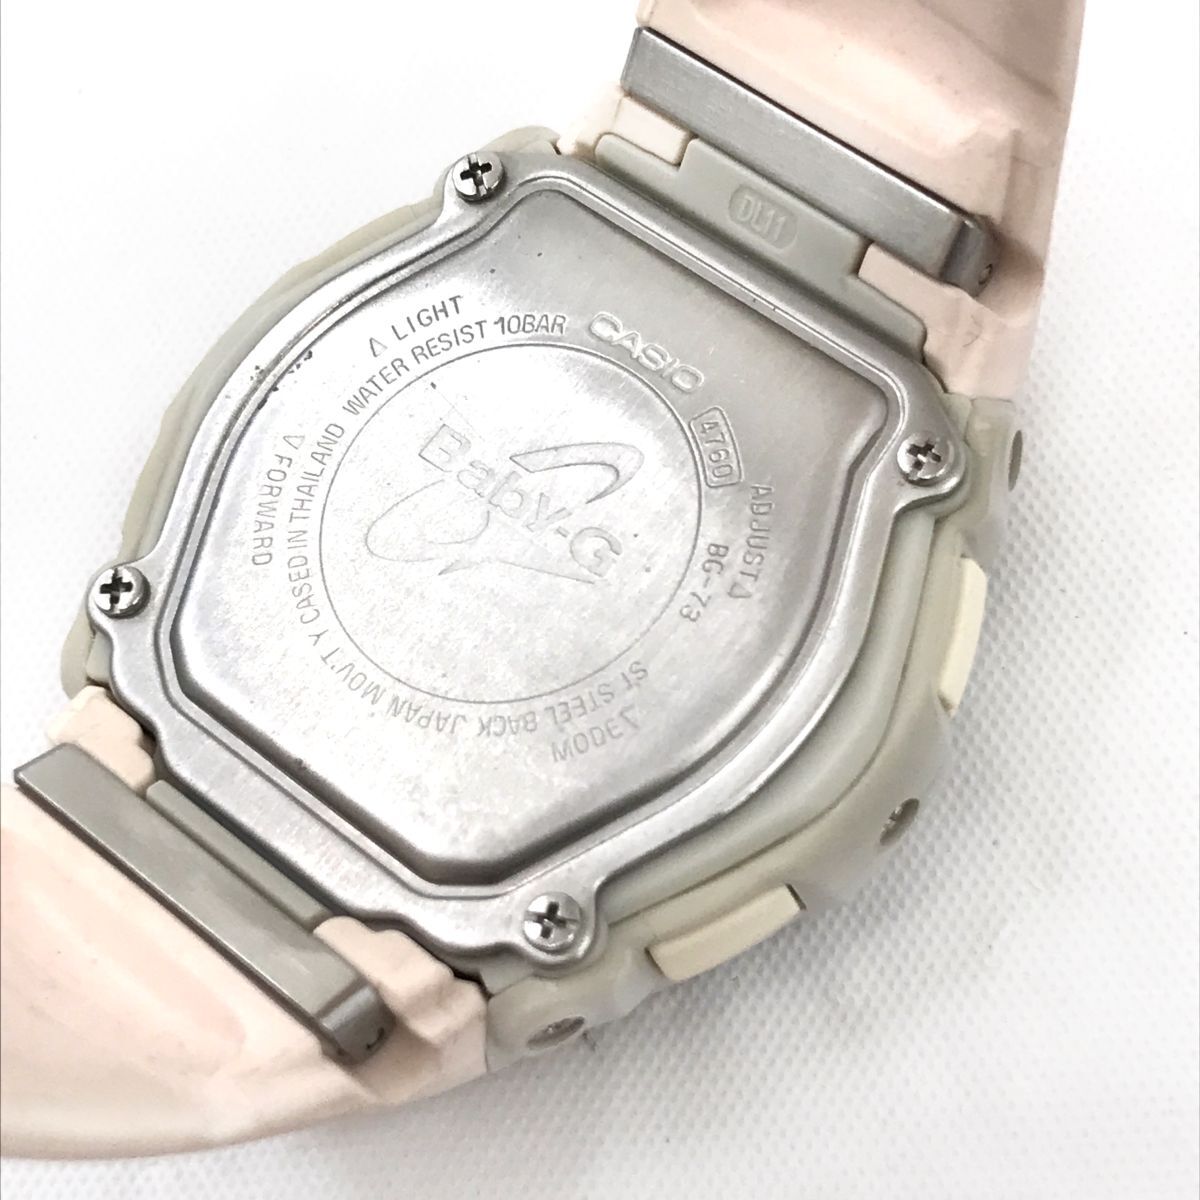  прекрасный товар CASIO Casio BABY-G baby G наручные часы BG-73 кварц дыра teji раунд симпатичный модный розовый календарь батарейка заменен рабочее состояние подтверждено 